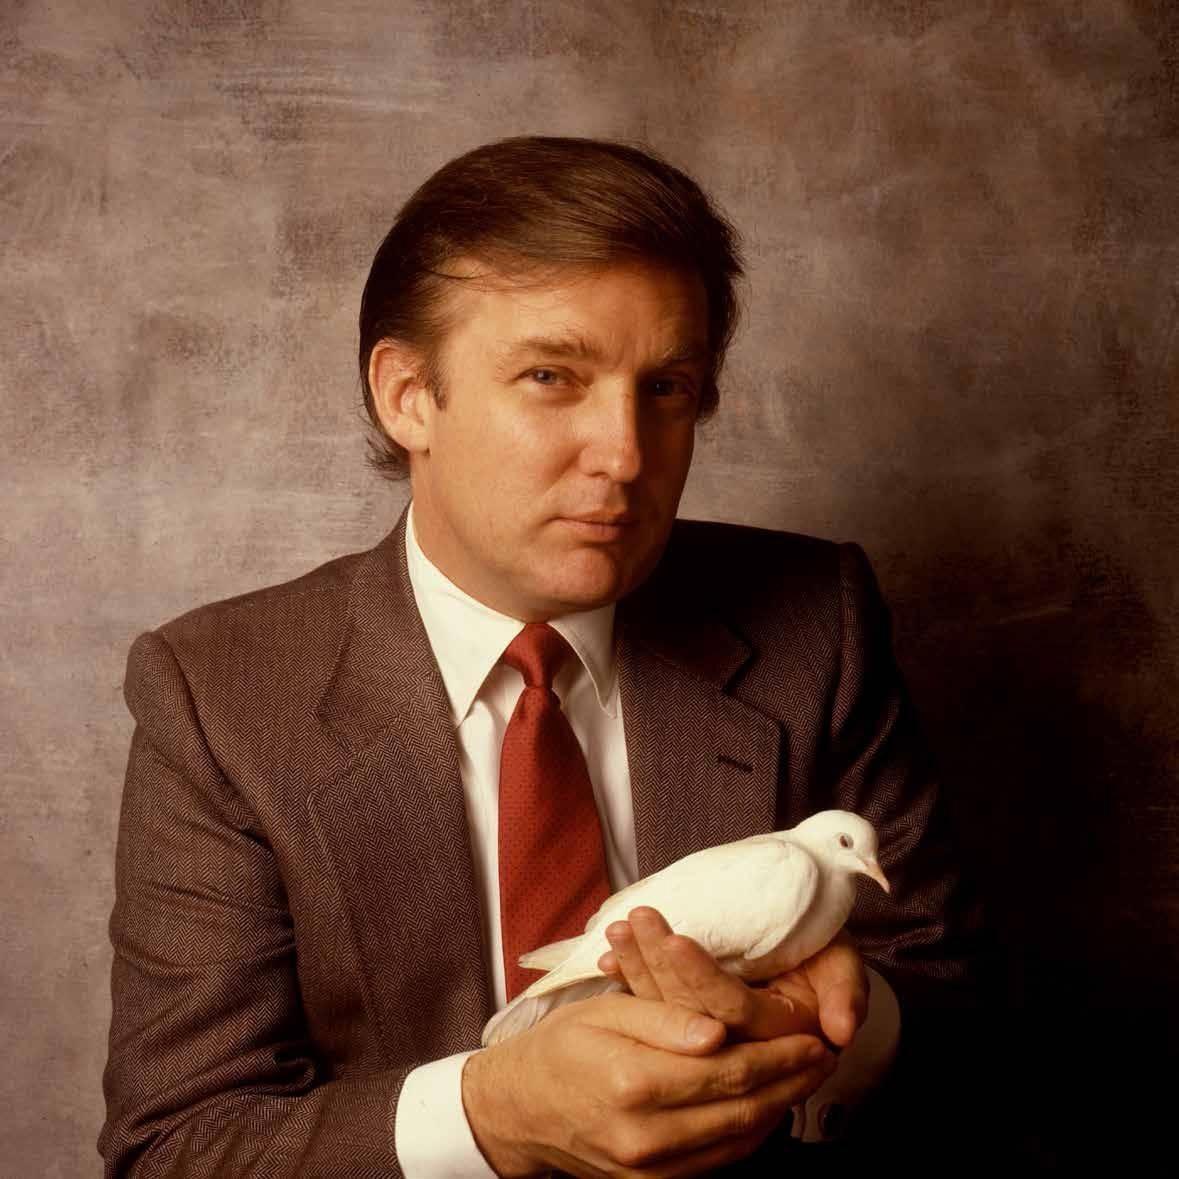 William Coupon Portrait Photograph - Donald Trump, Businessman